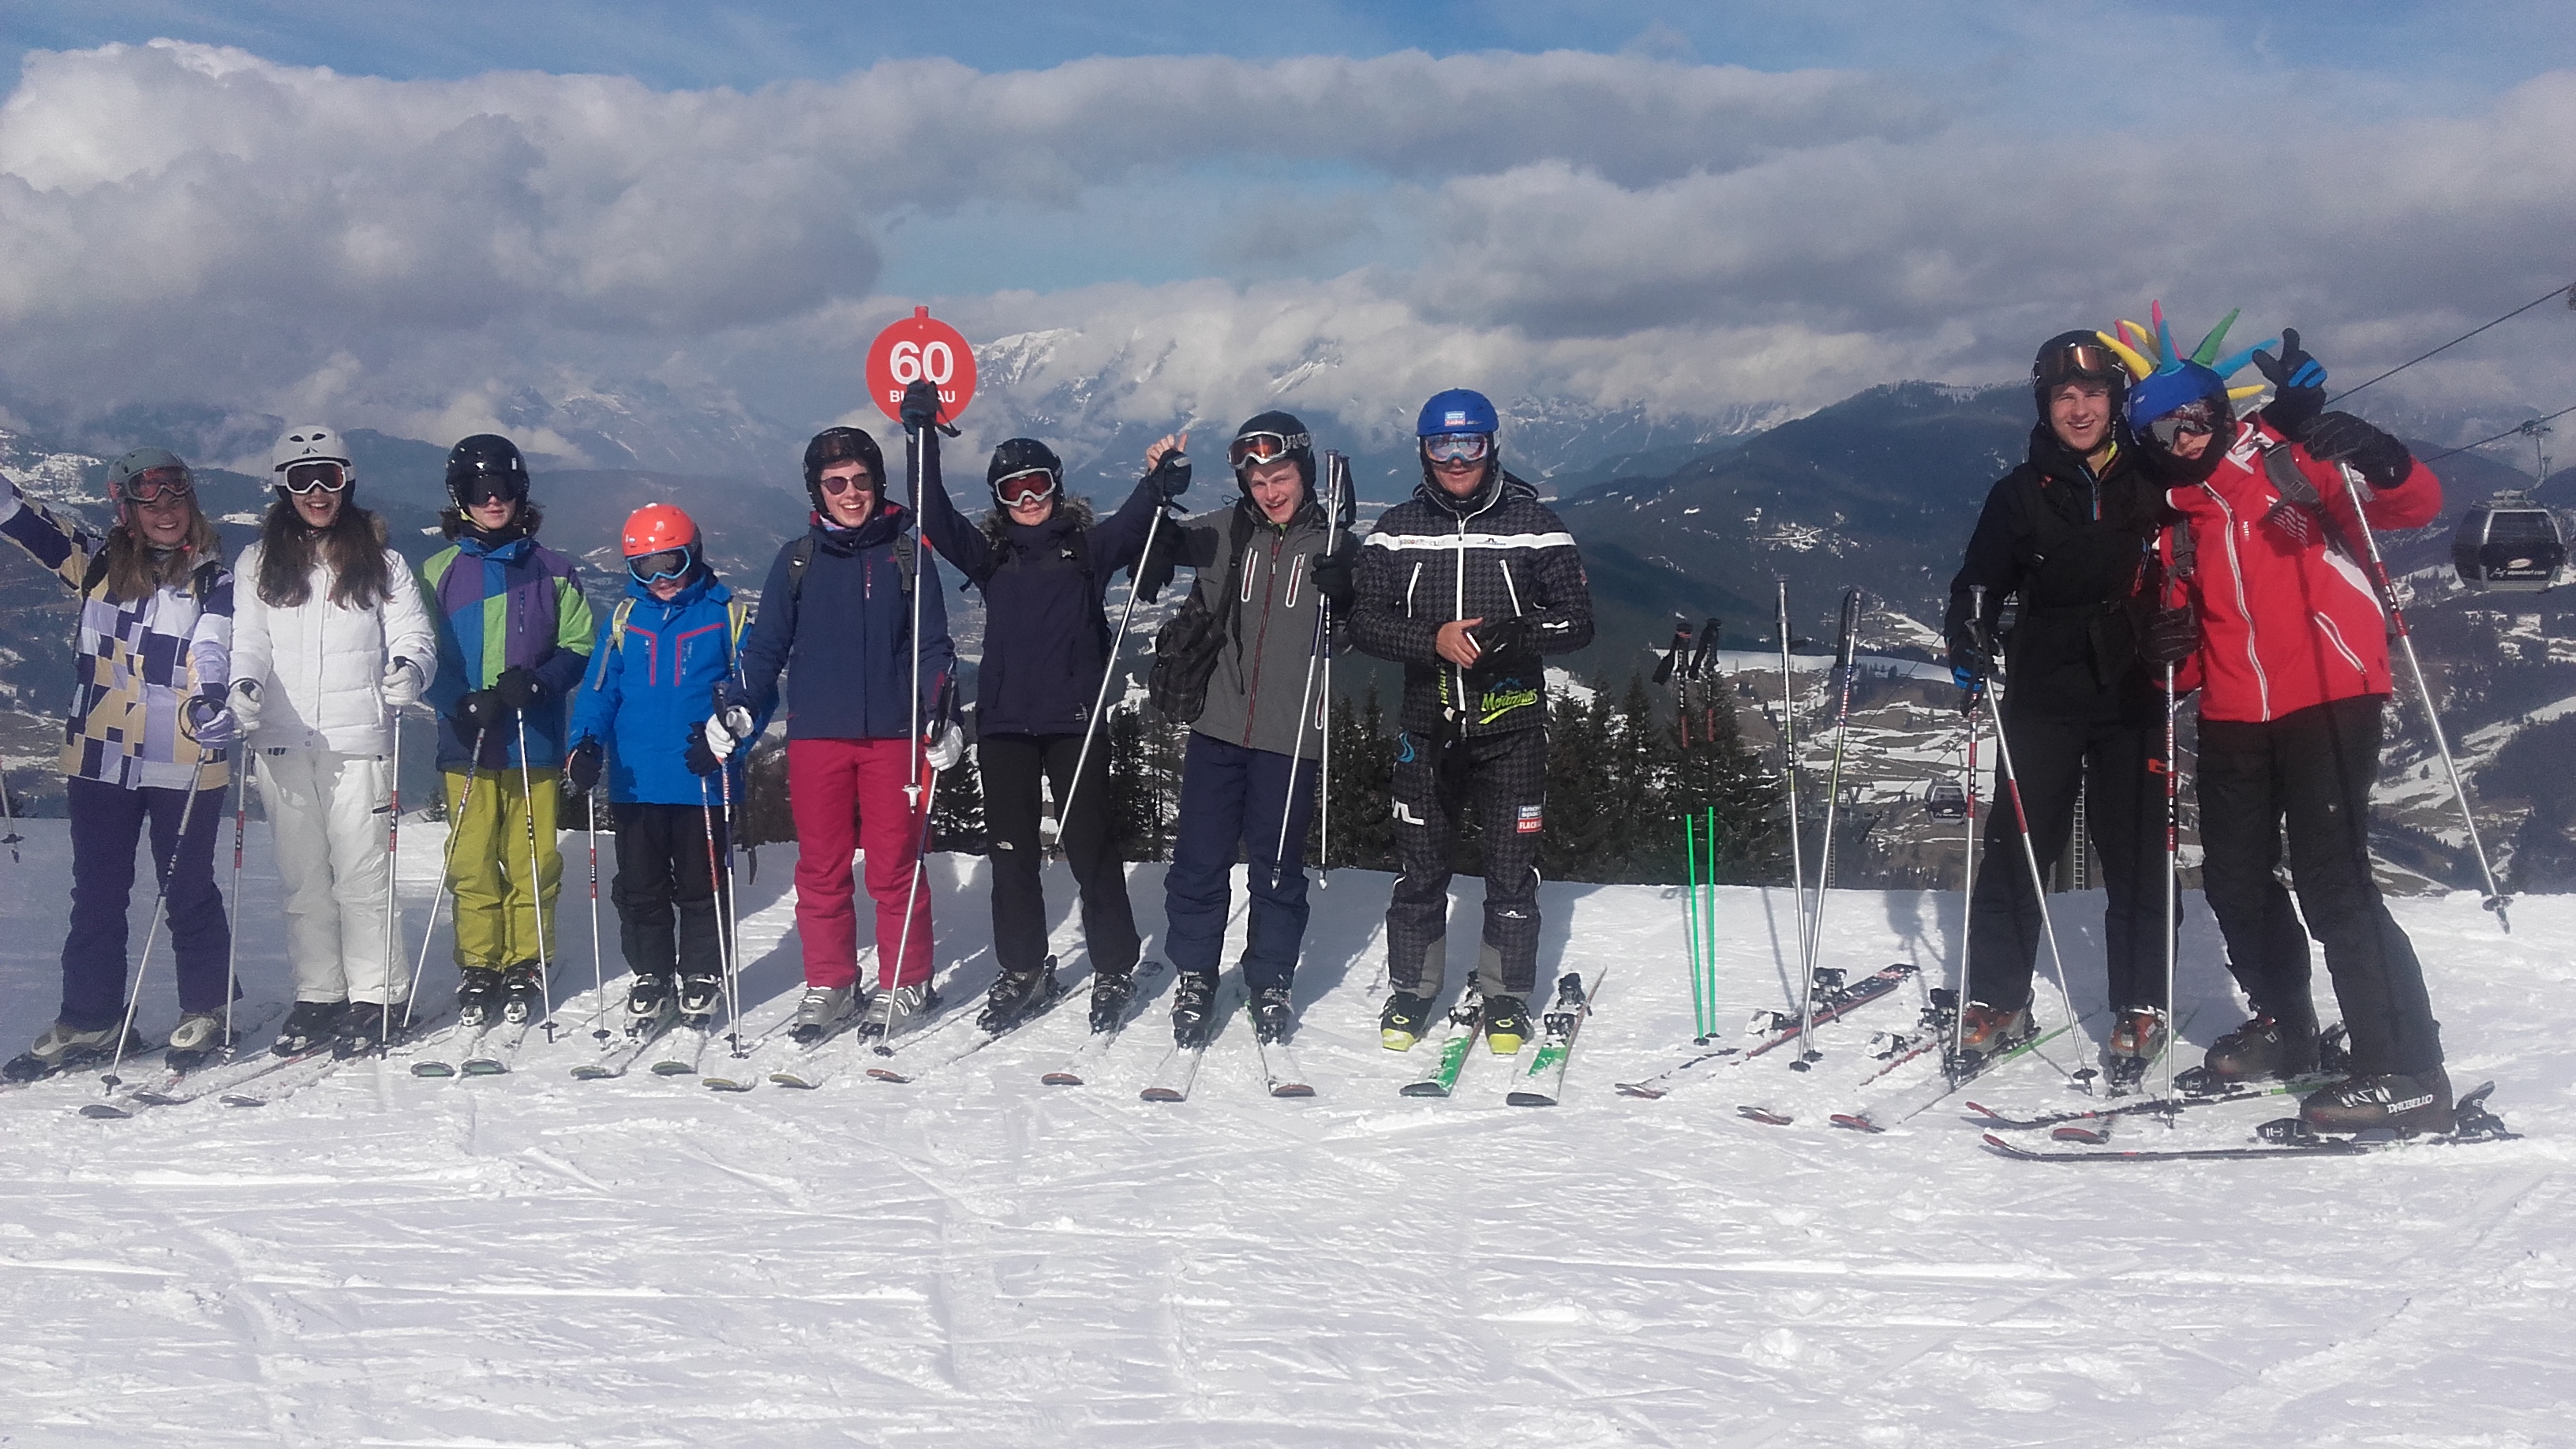 Fun in the Sun and Snow for the Annual Senior School Ski Trip